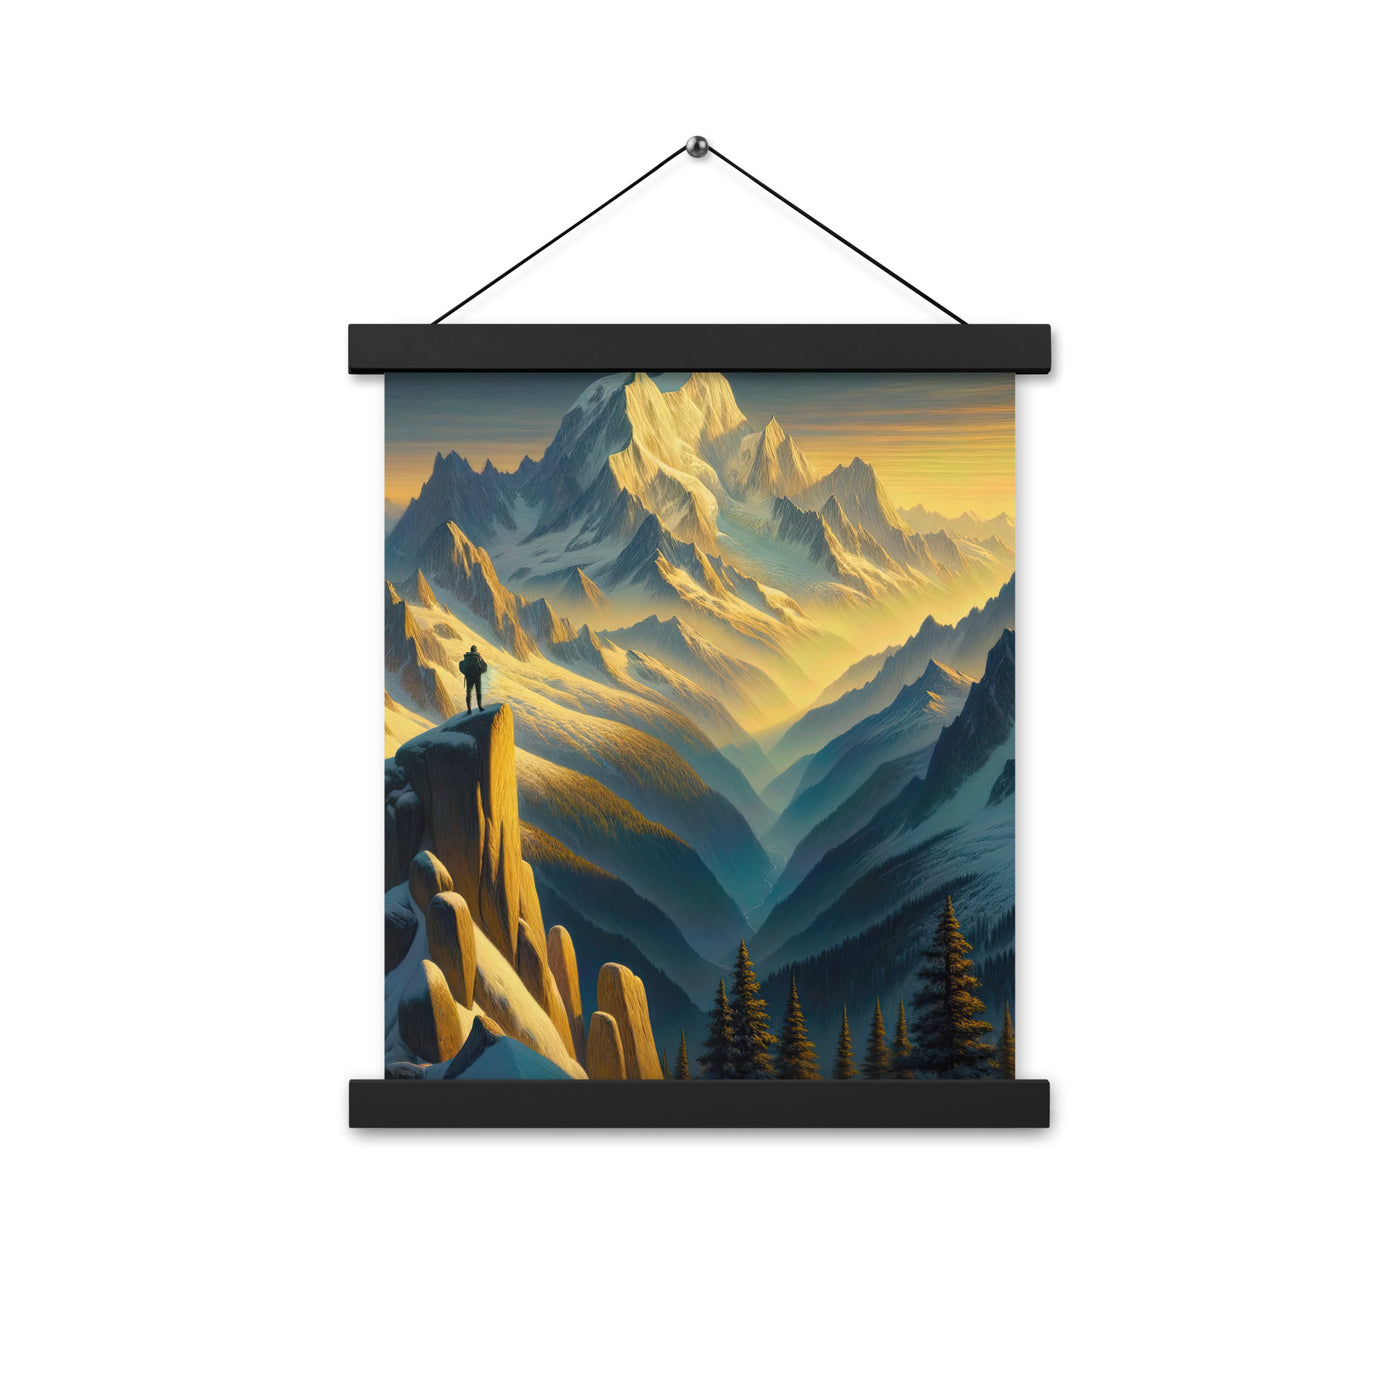 Ölgemälde eines Wanderers bei Morgendämmerung auf Alpengipfeln mit goldenem Sonnenlicht - Premium Poster mit Aufhängung wandern xxx yyy zzz 27.9 x 35.6 cm